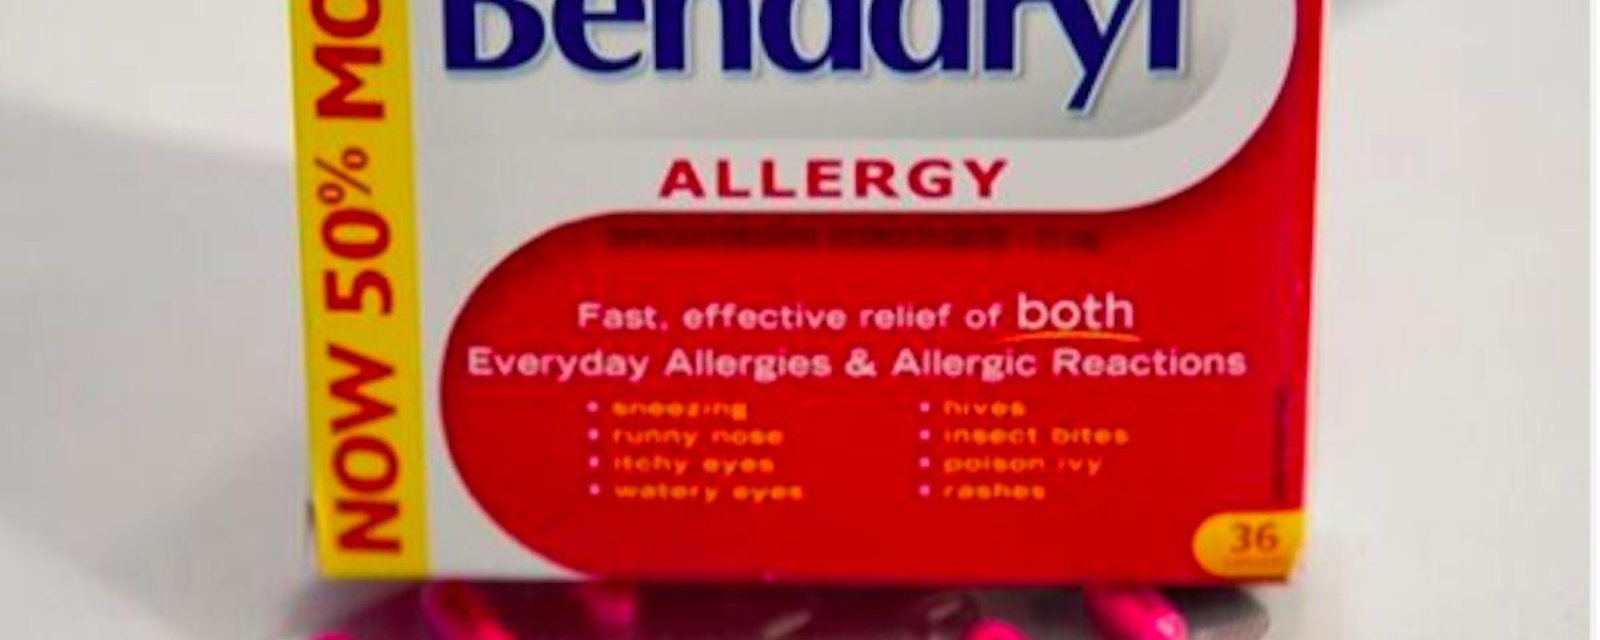 Selon des allergologues, le Benadryl ne devrait pas être disponible sans ordonnance